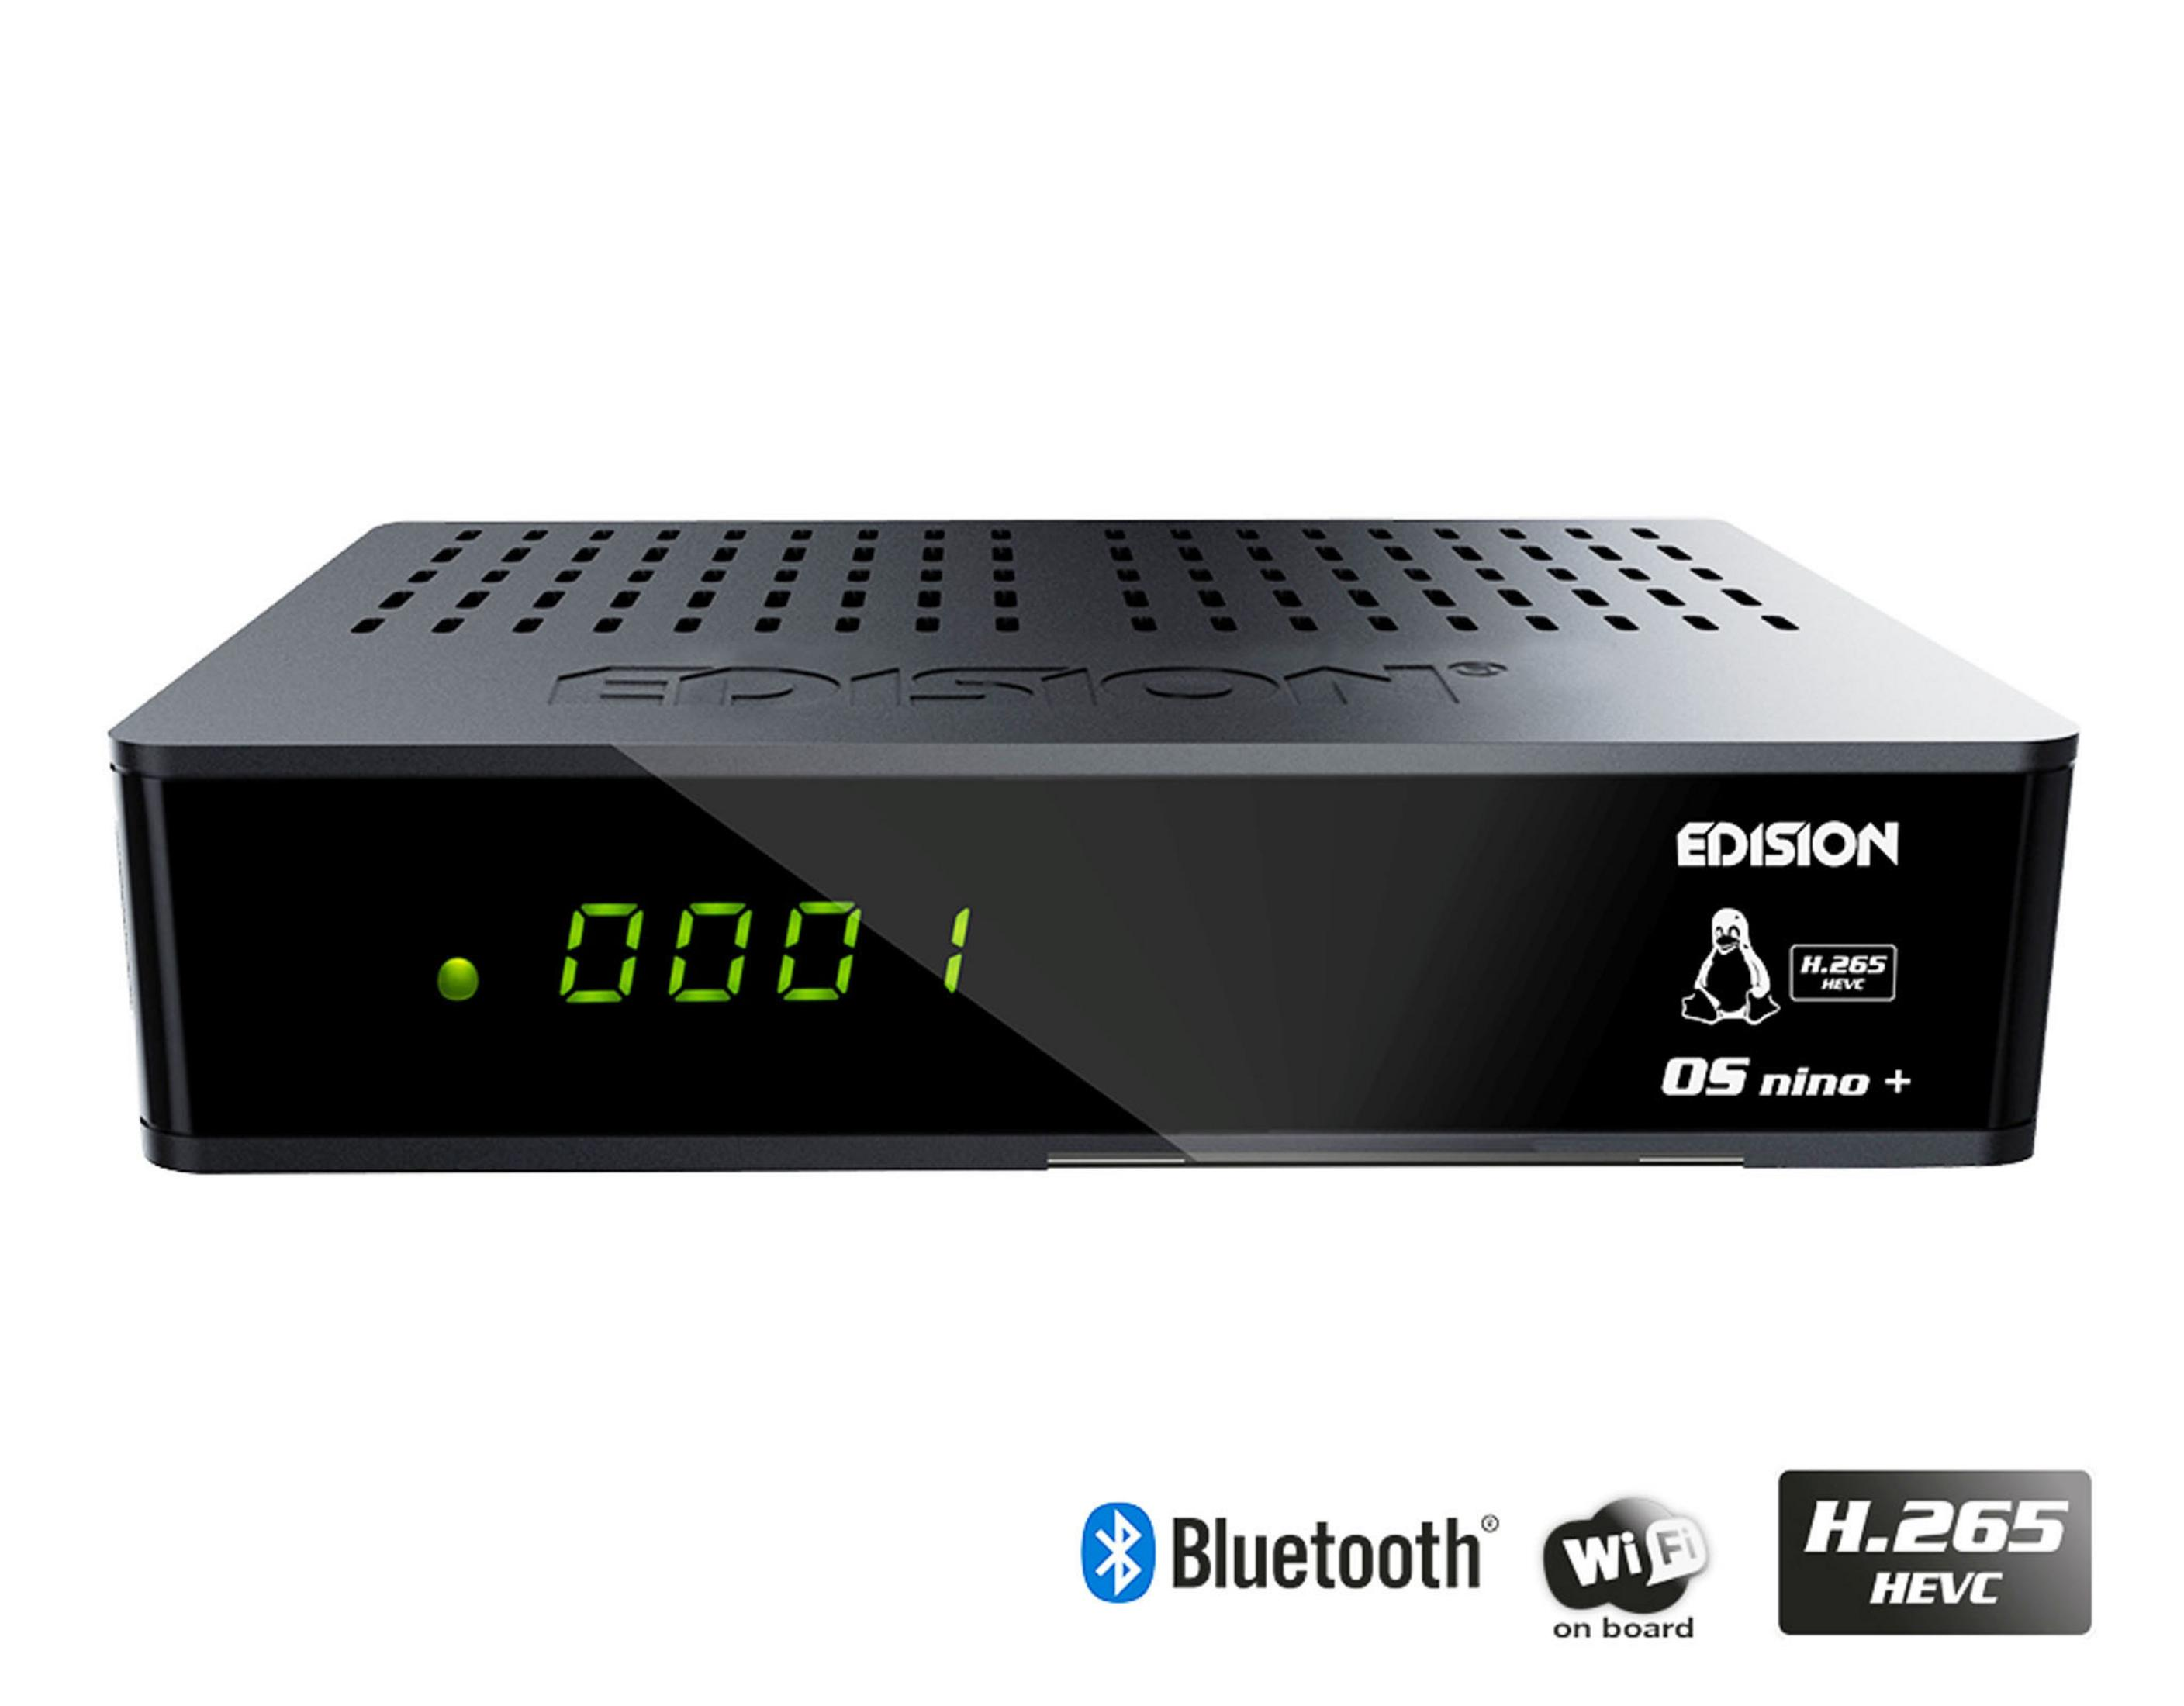 EDISION 01-08-0009 DVB-C/T2/S2 DVB-S2, DVB-C, Schwarz) Tuner, (HDTV, Twin PVR-Funktion=optional, Receiver DVB-S, Combo DVB-T